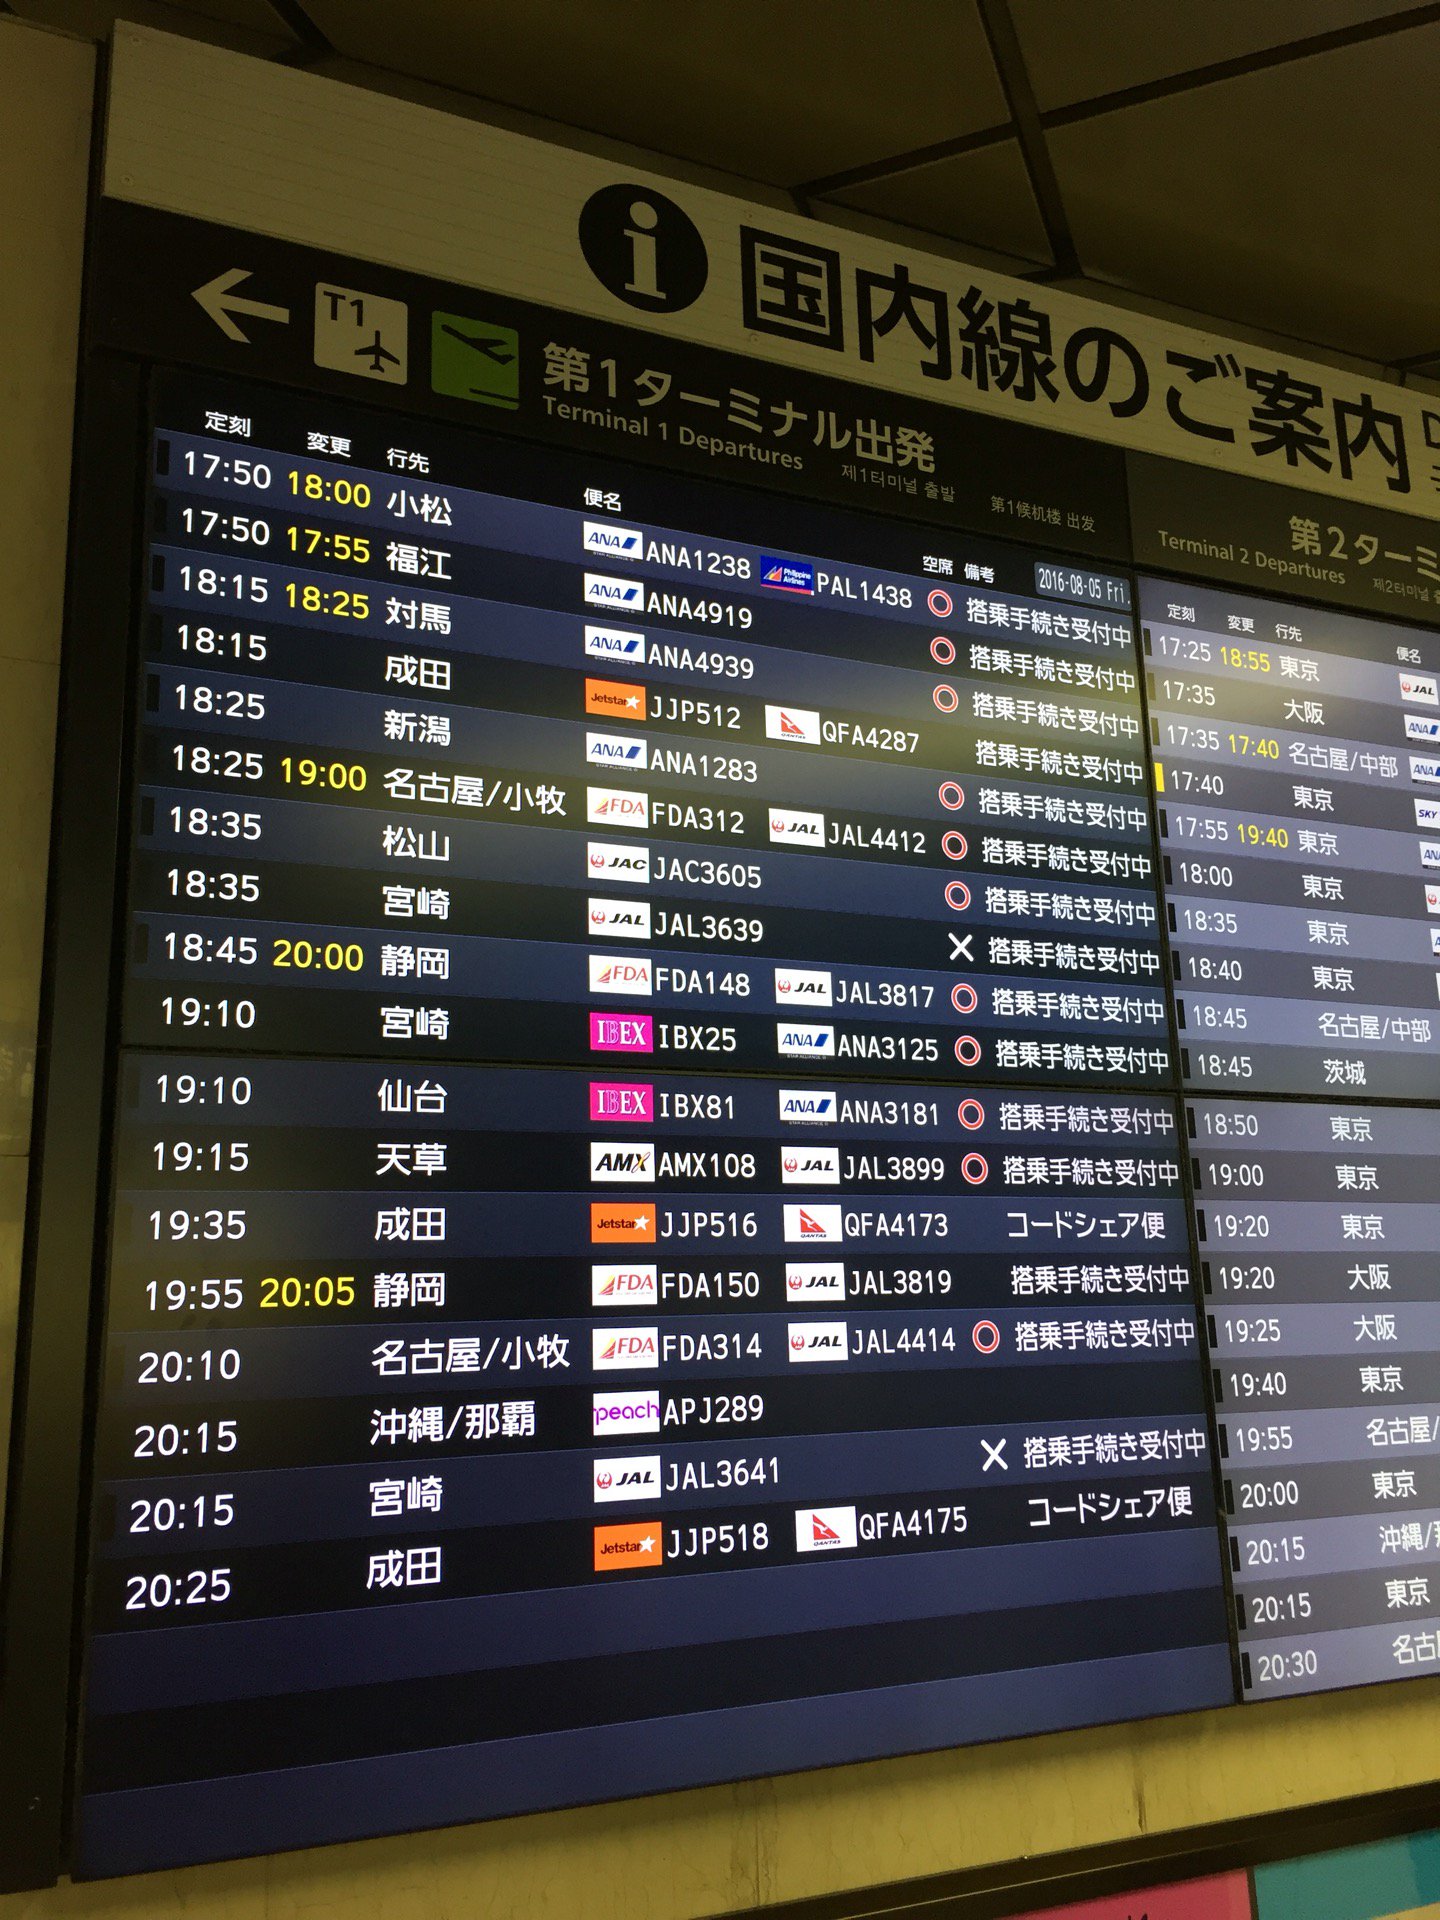 飛行機が遅れてる。。。 (@ 福岡空港駅 in Fukuoka, 福岡県) https://t.co/0EihyMP2ZL https://t.co/CMiSSxm730